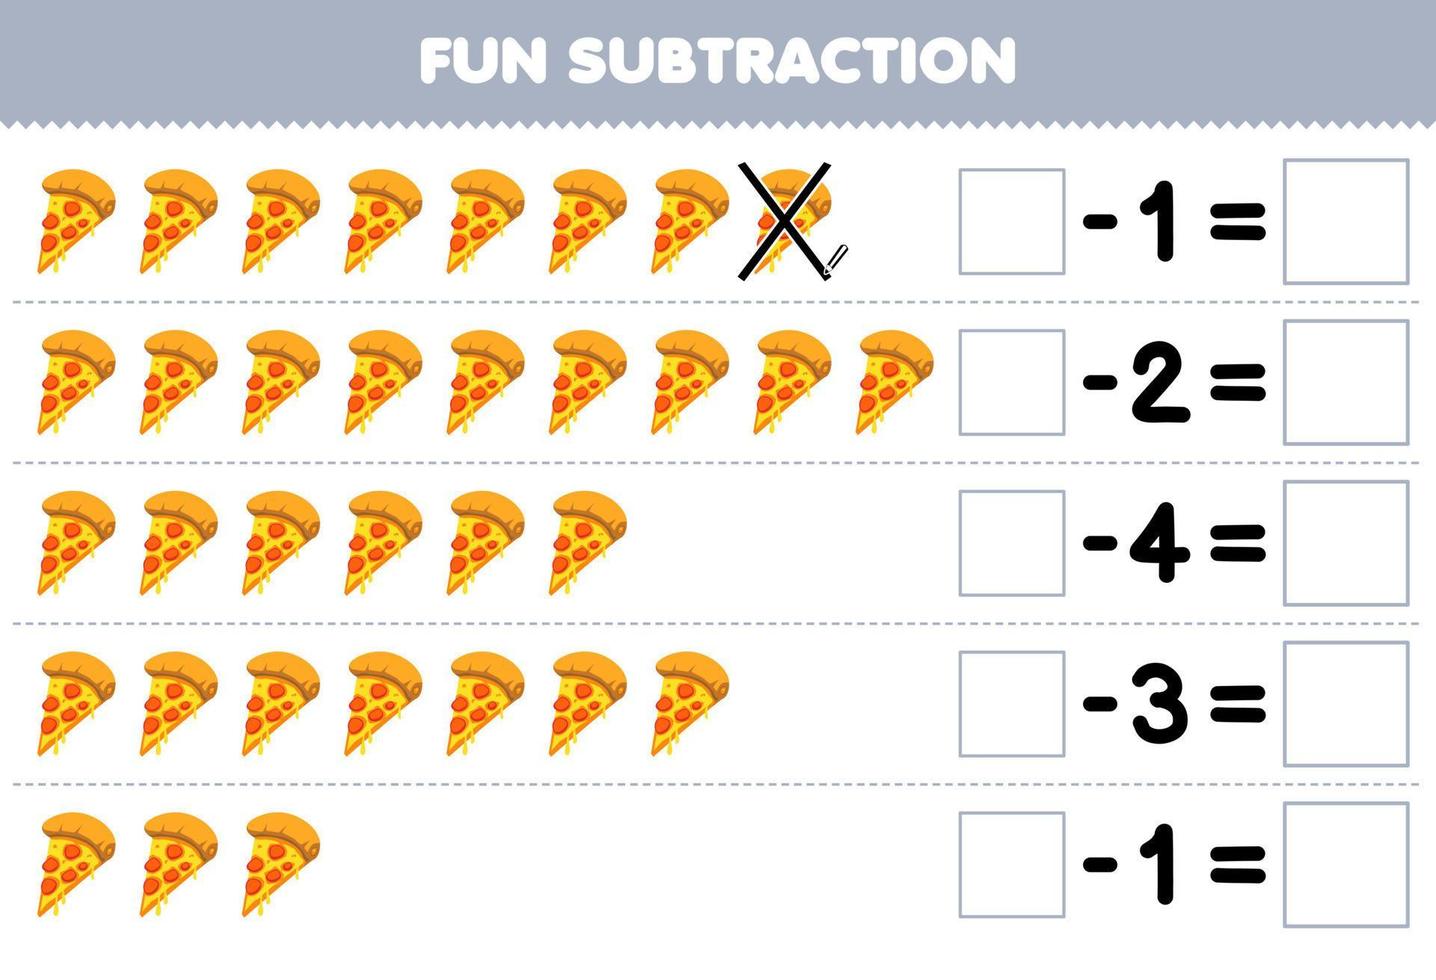 Lernspiel für Kinder Spaßsubtraktion durch Zählen von Cartoon-Pizza in jeder Reihe und Eliminieren des druckbaren Arbeitsblatts für Lebensmittel vektor